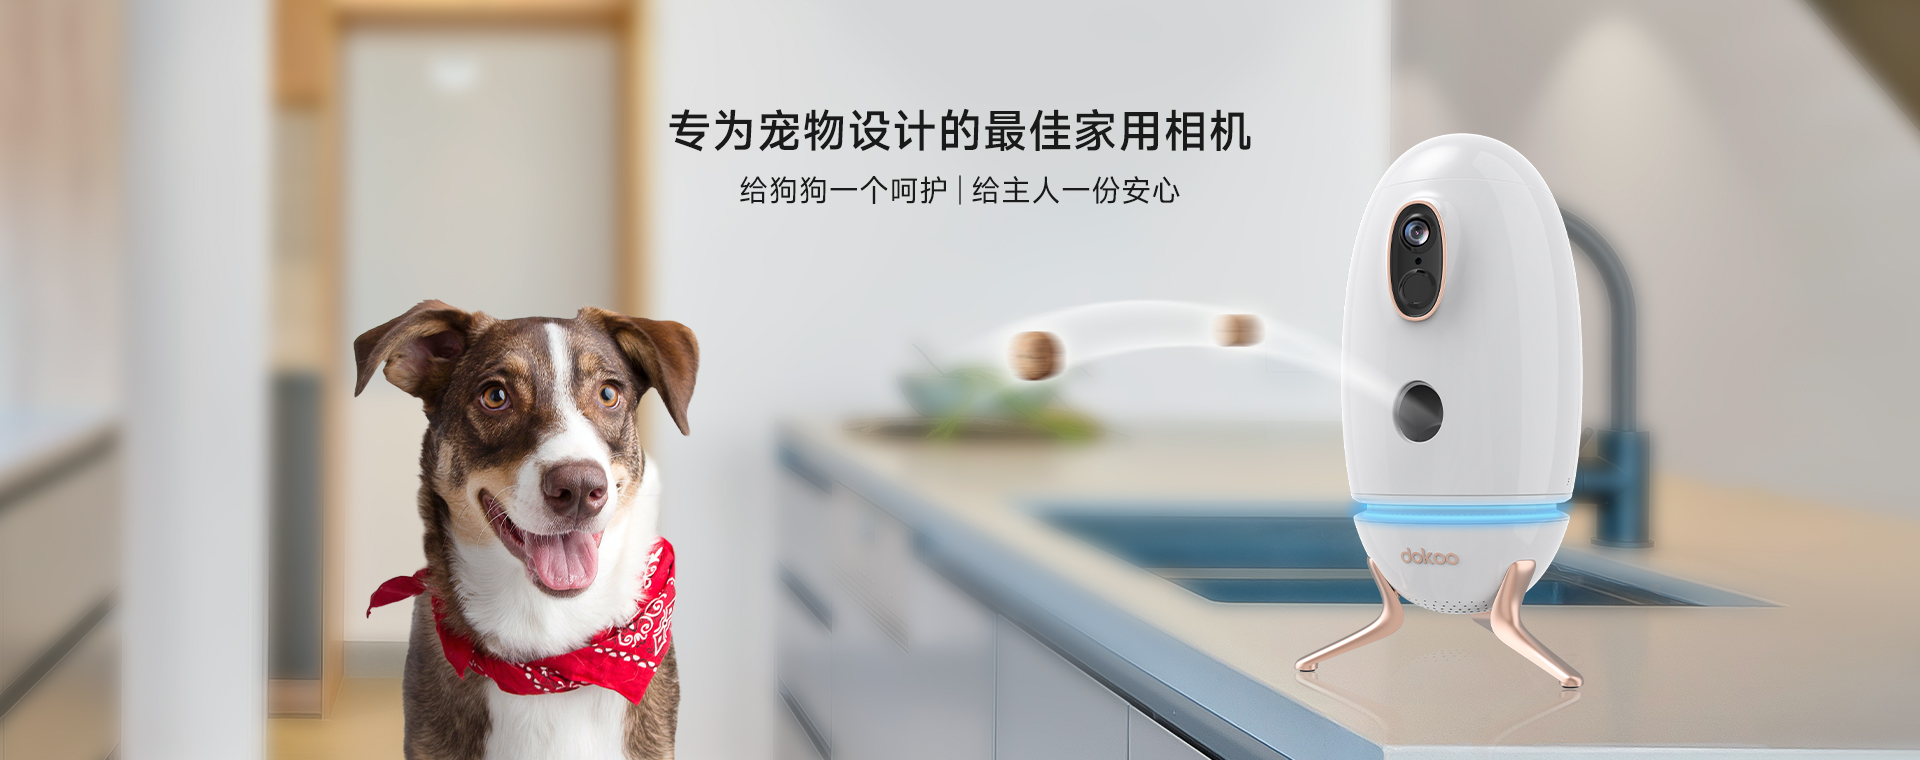 深圳市美视力科技有限公司ZhiMu Tech Dokoo智能寵物(wù)投食器